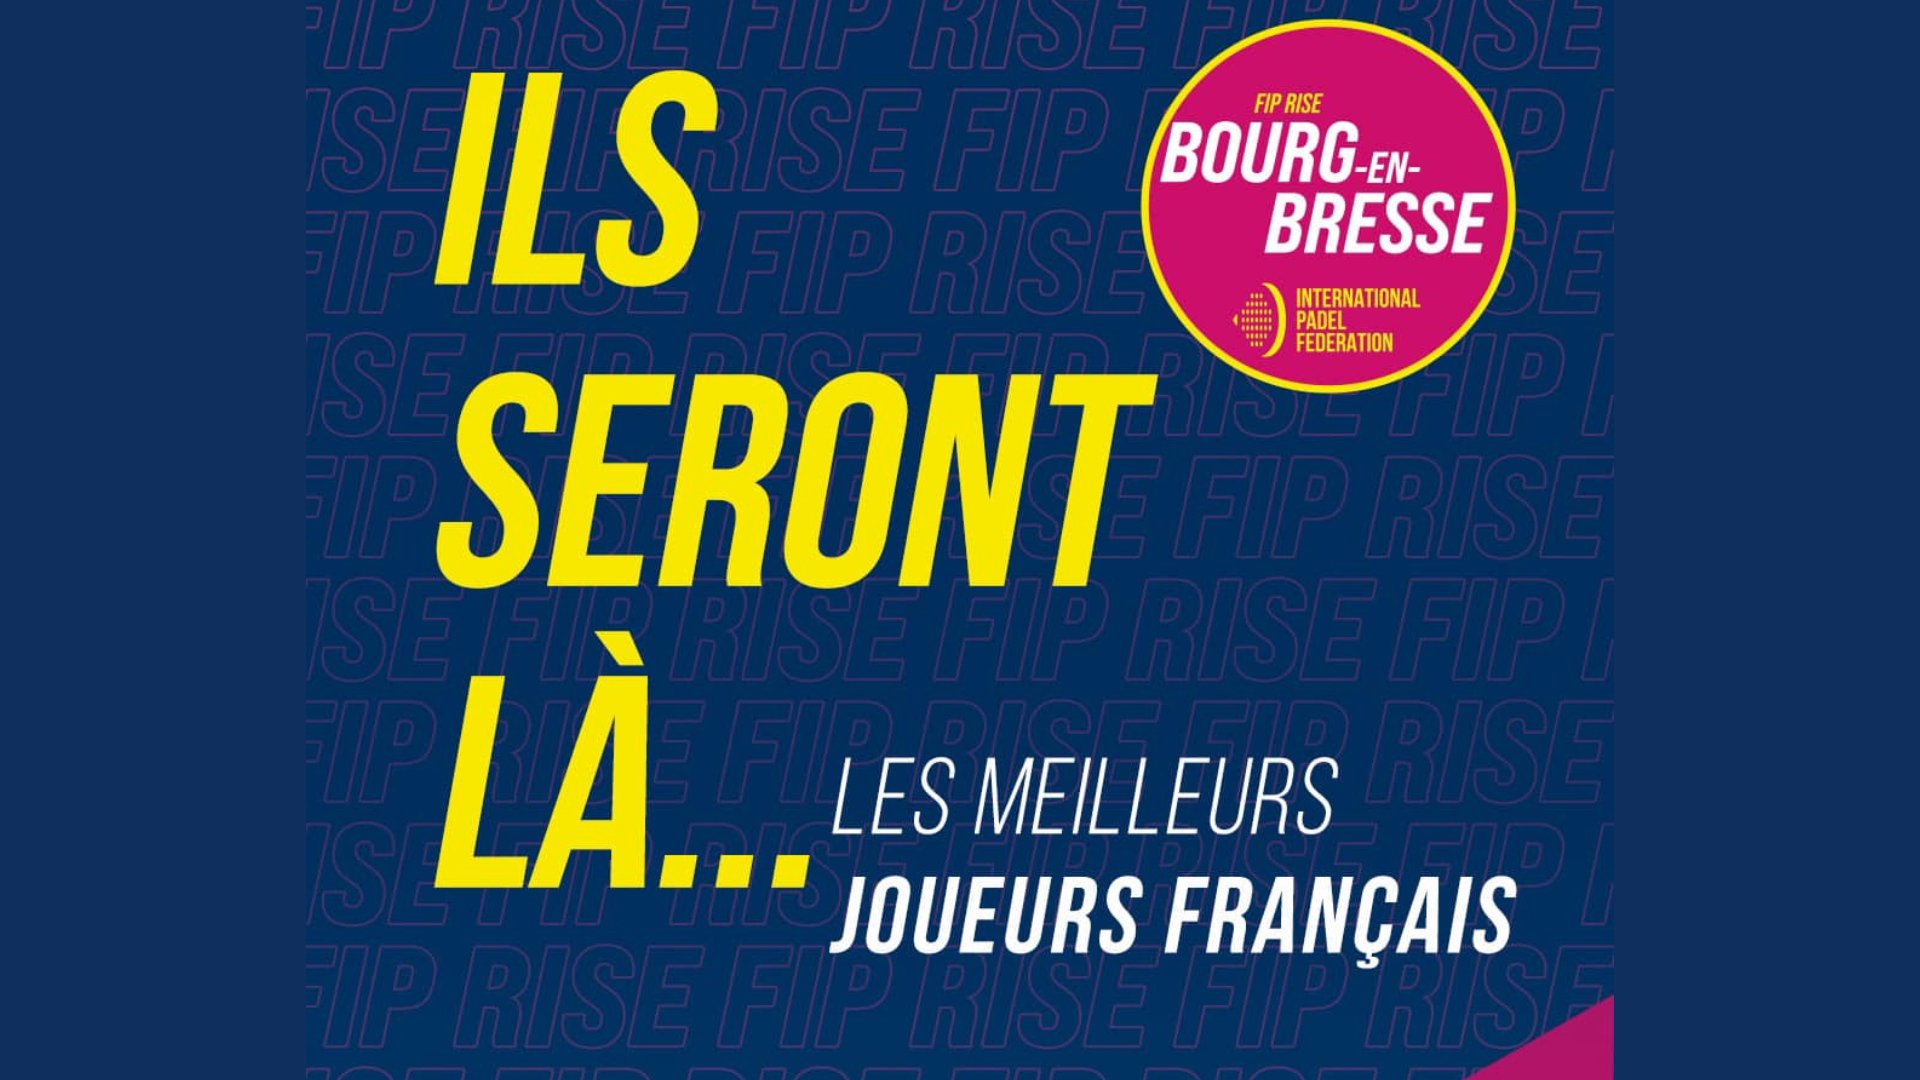 Los mejores jugadores franceses FIP Rise Bourge en Bresse